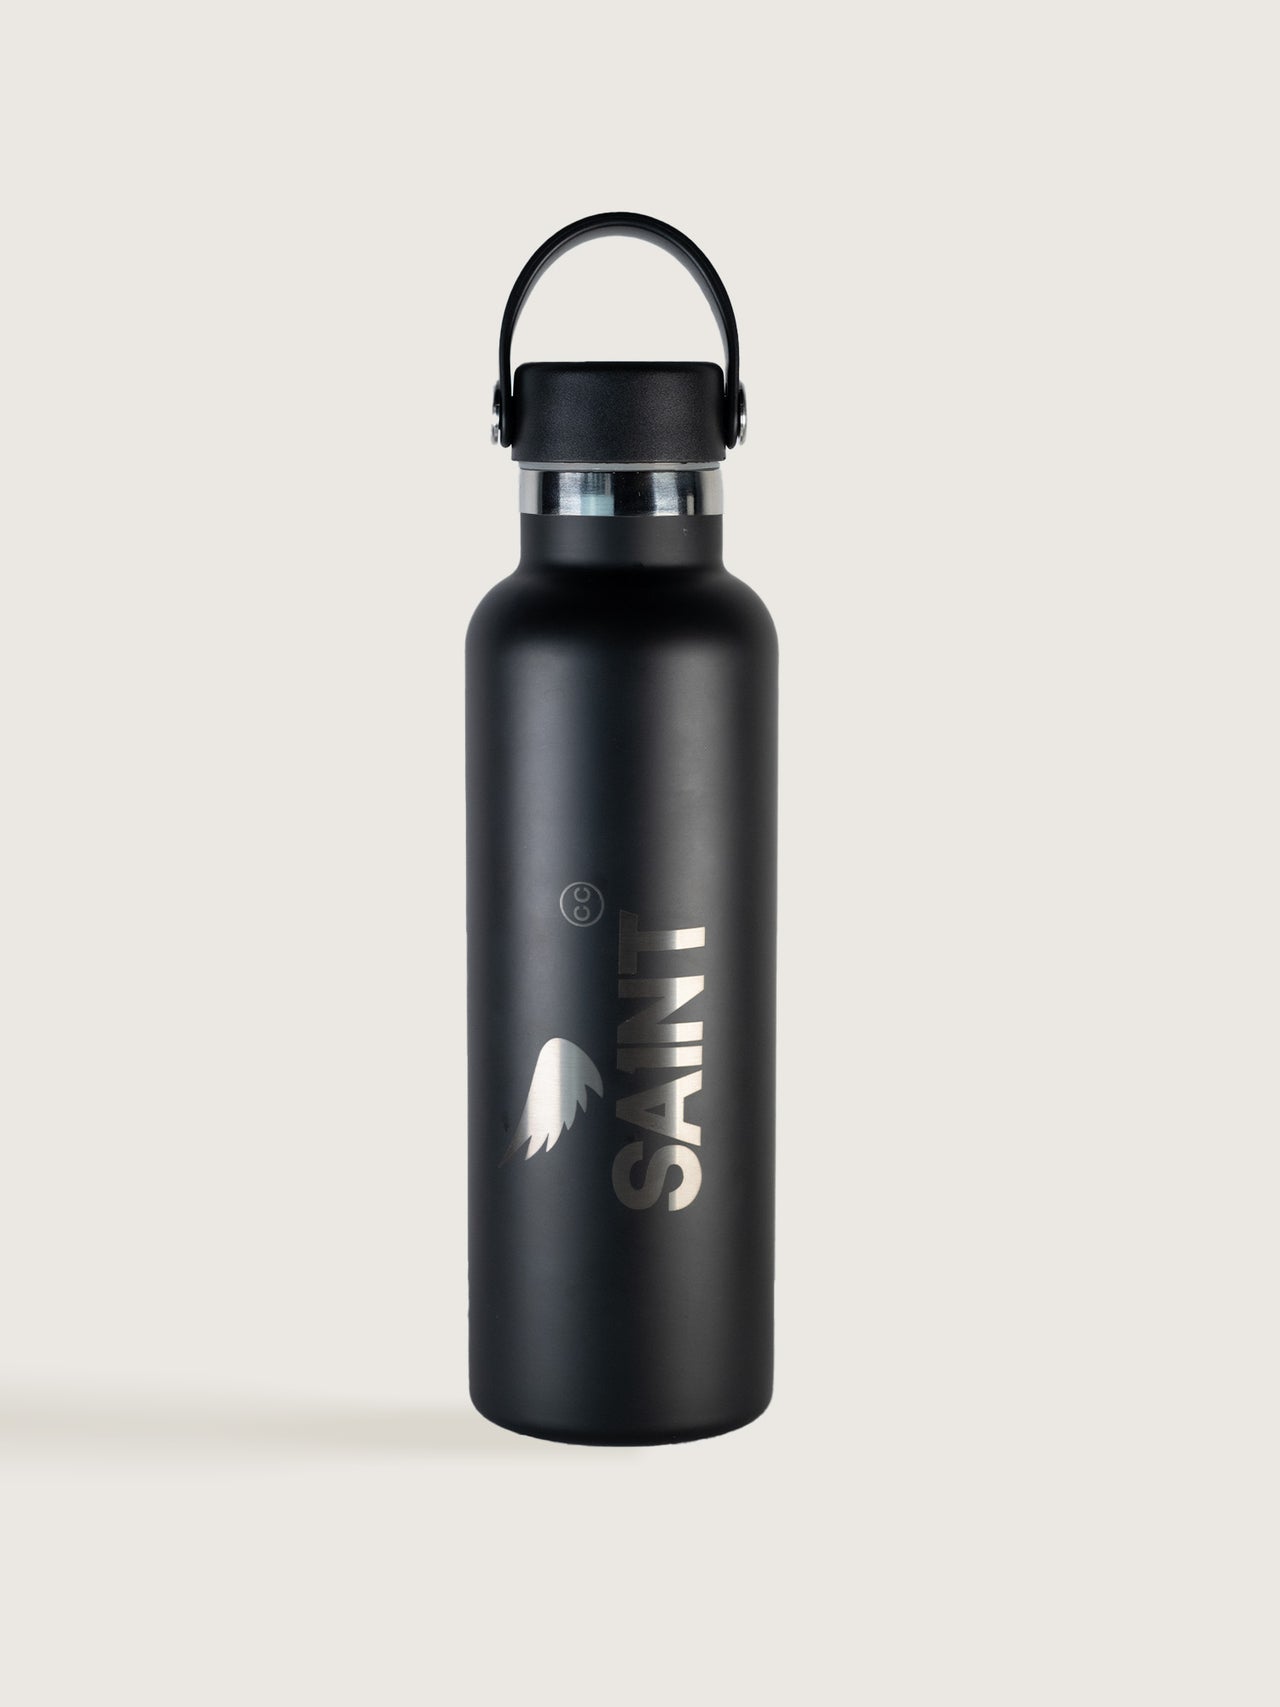 SA1NT 不锈钢瓶 - 750ml - 黑色